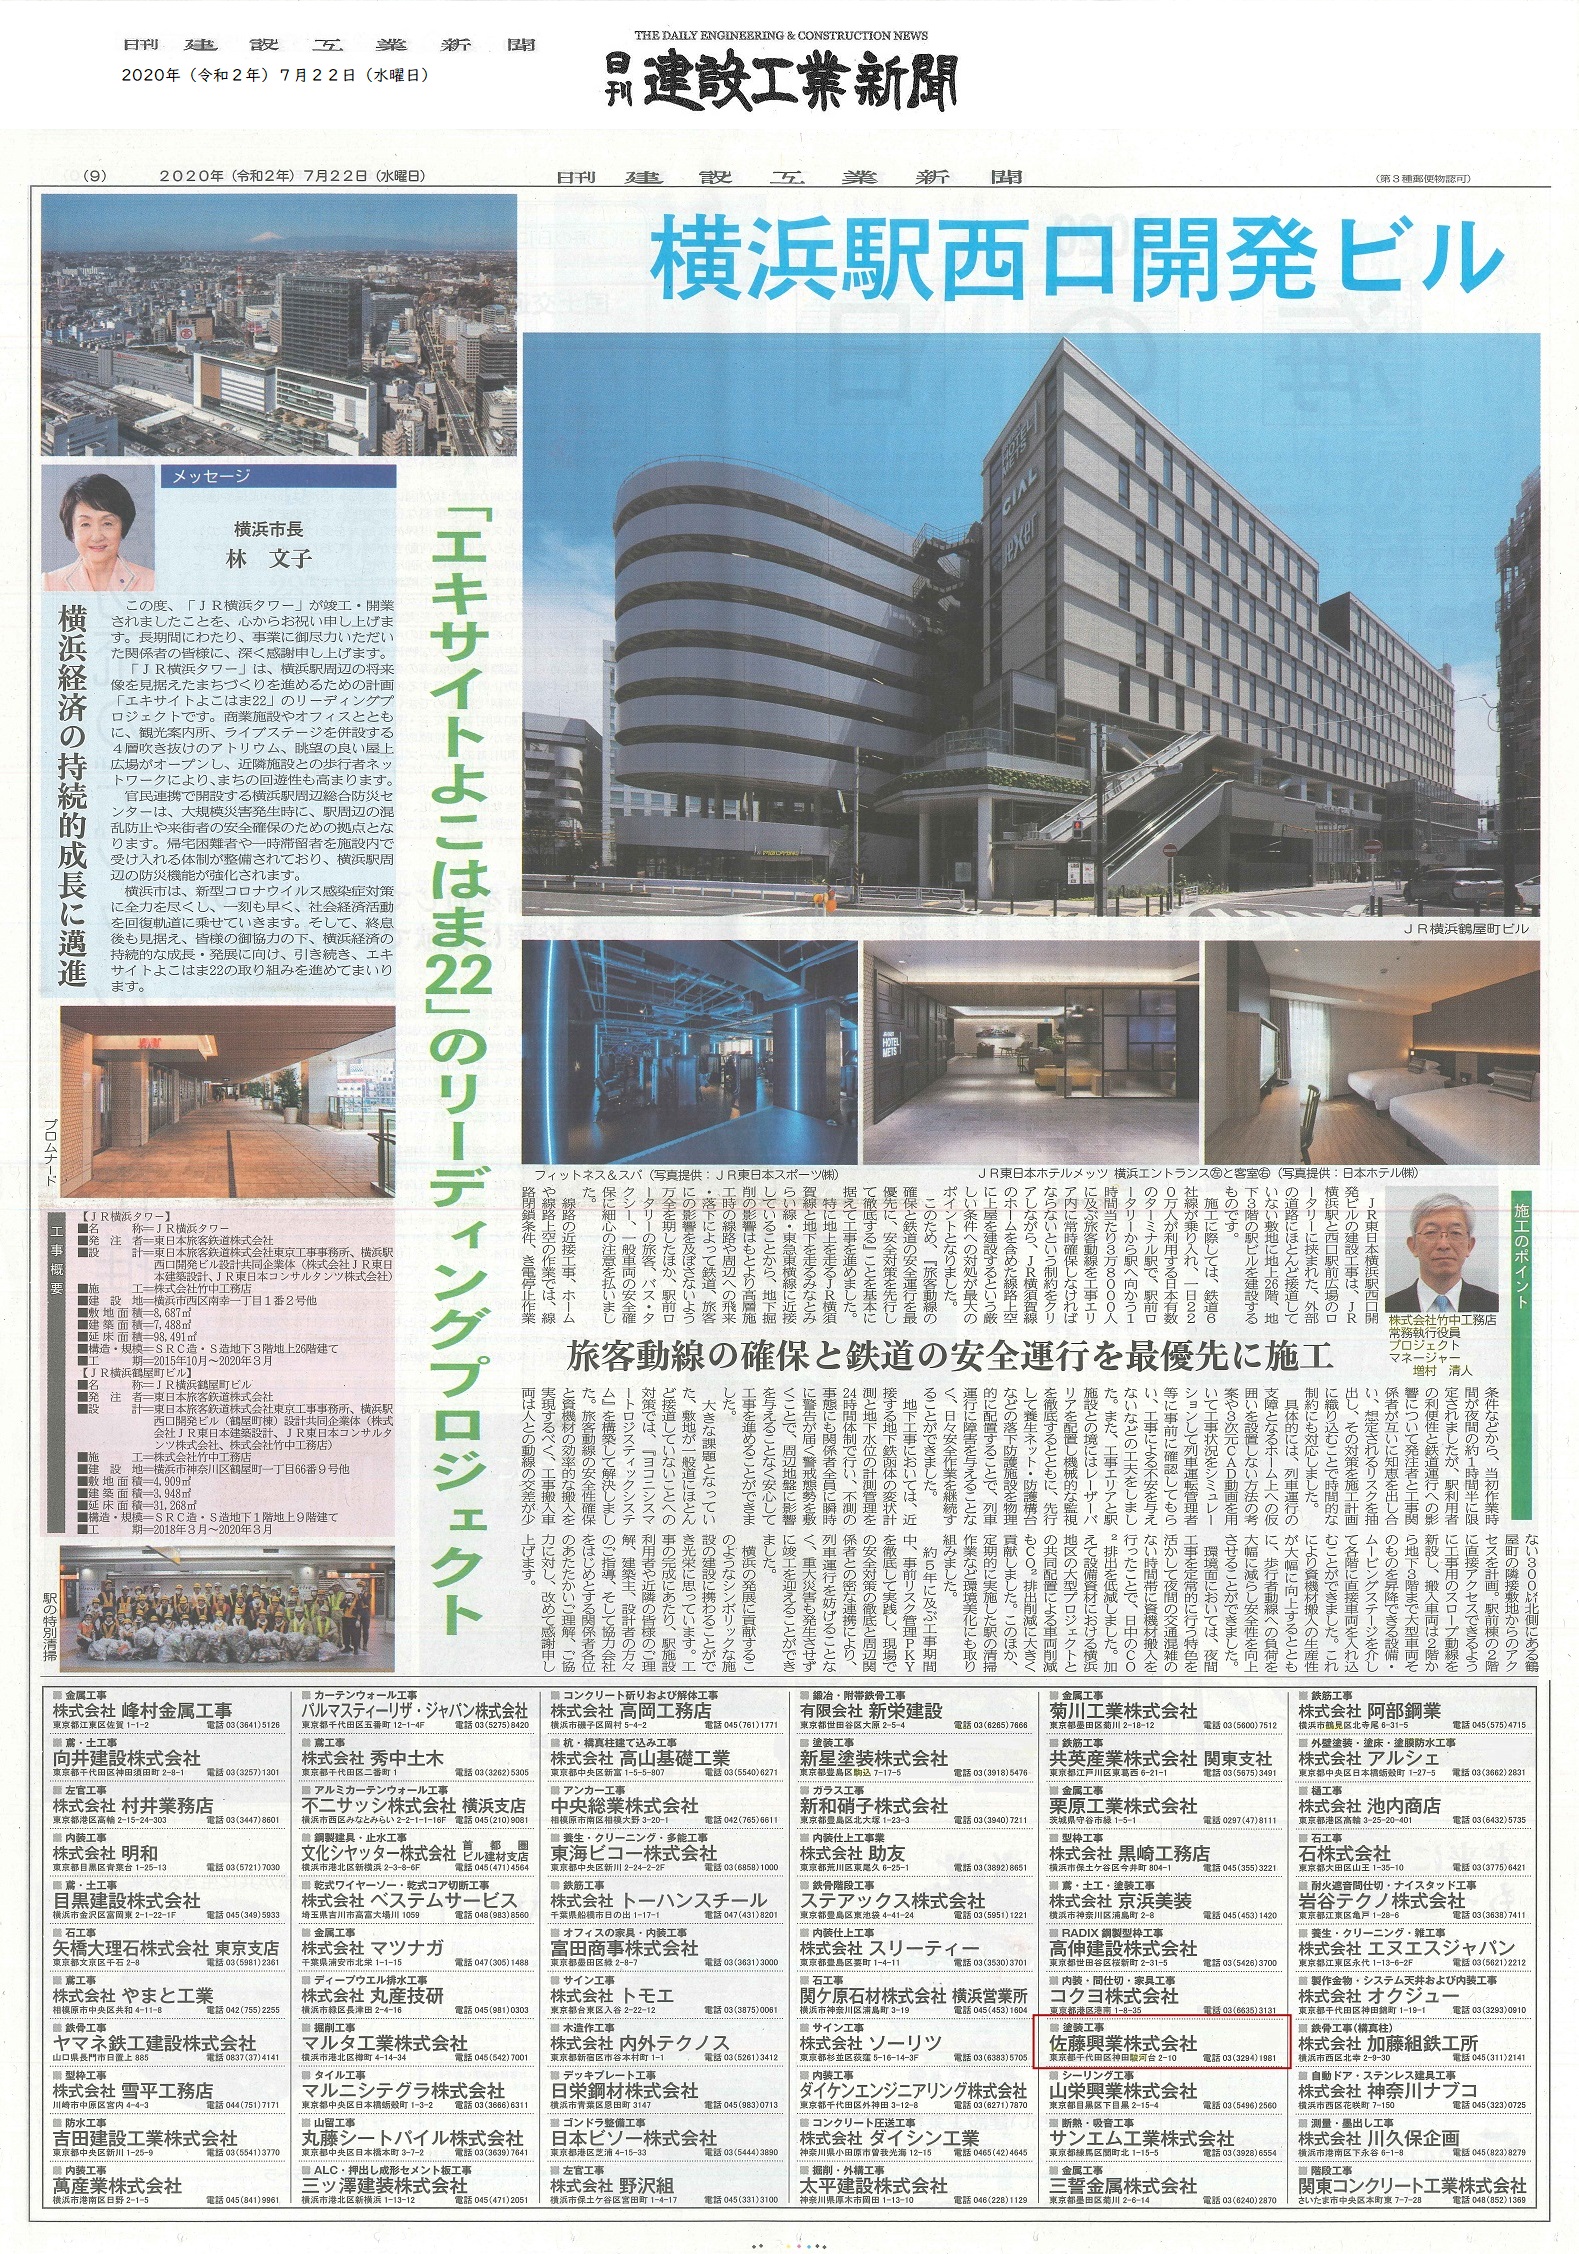 横浜駅西口開発ビルの竣工広告が 『日刊建設工業新聞』に掲載されました